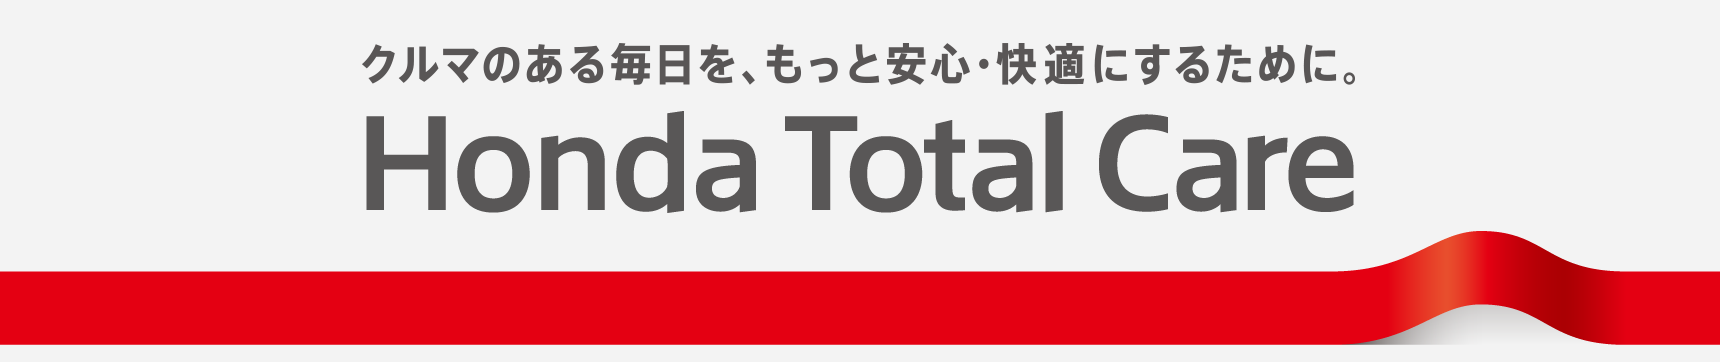 Honda Total Care  Honda Cars 岡山